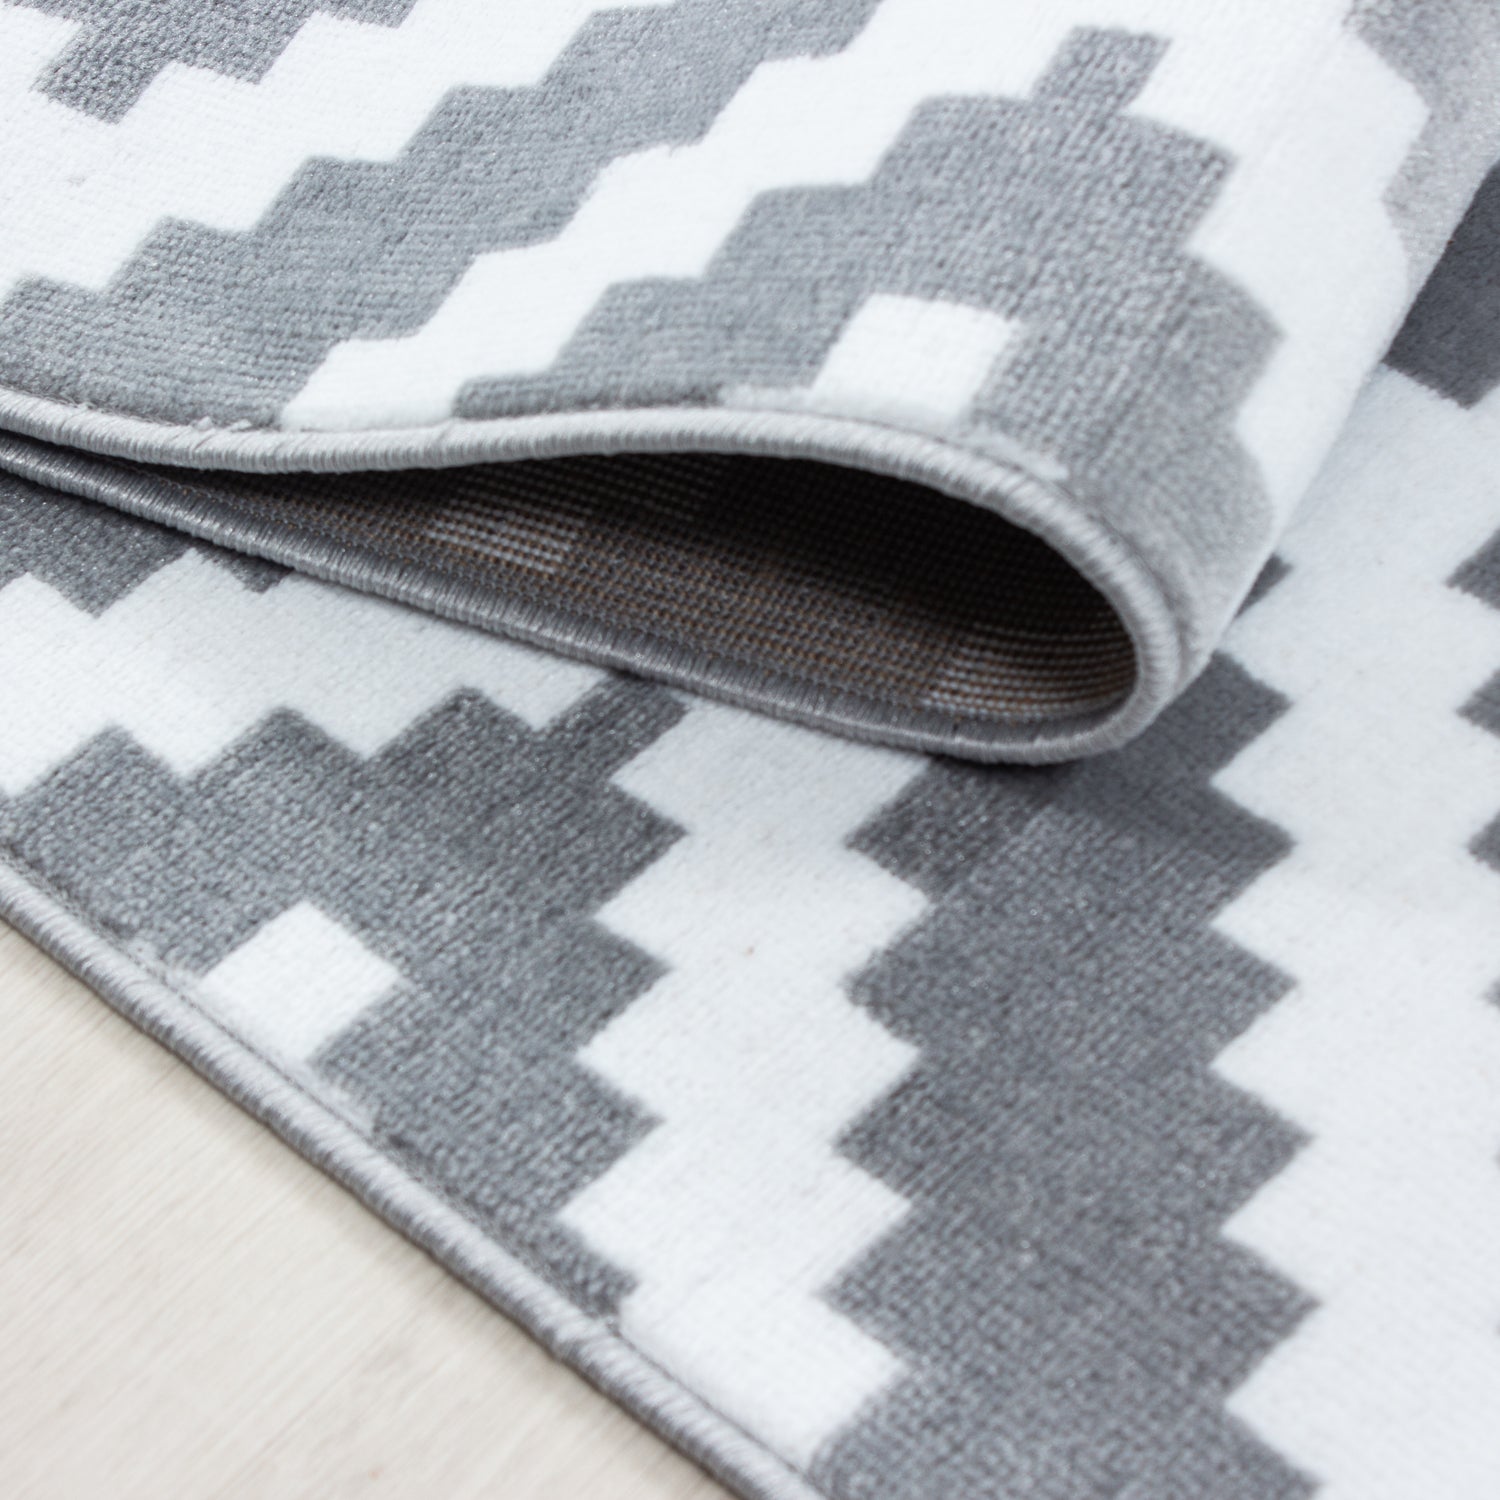 Teppich Bettumrandung 3 Teile Läuferset Karo Design Grau Weiß Meliert